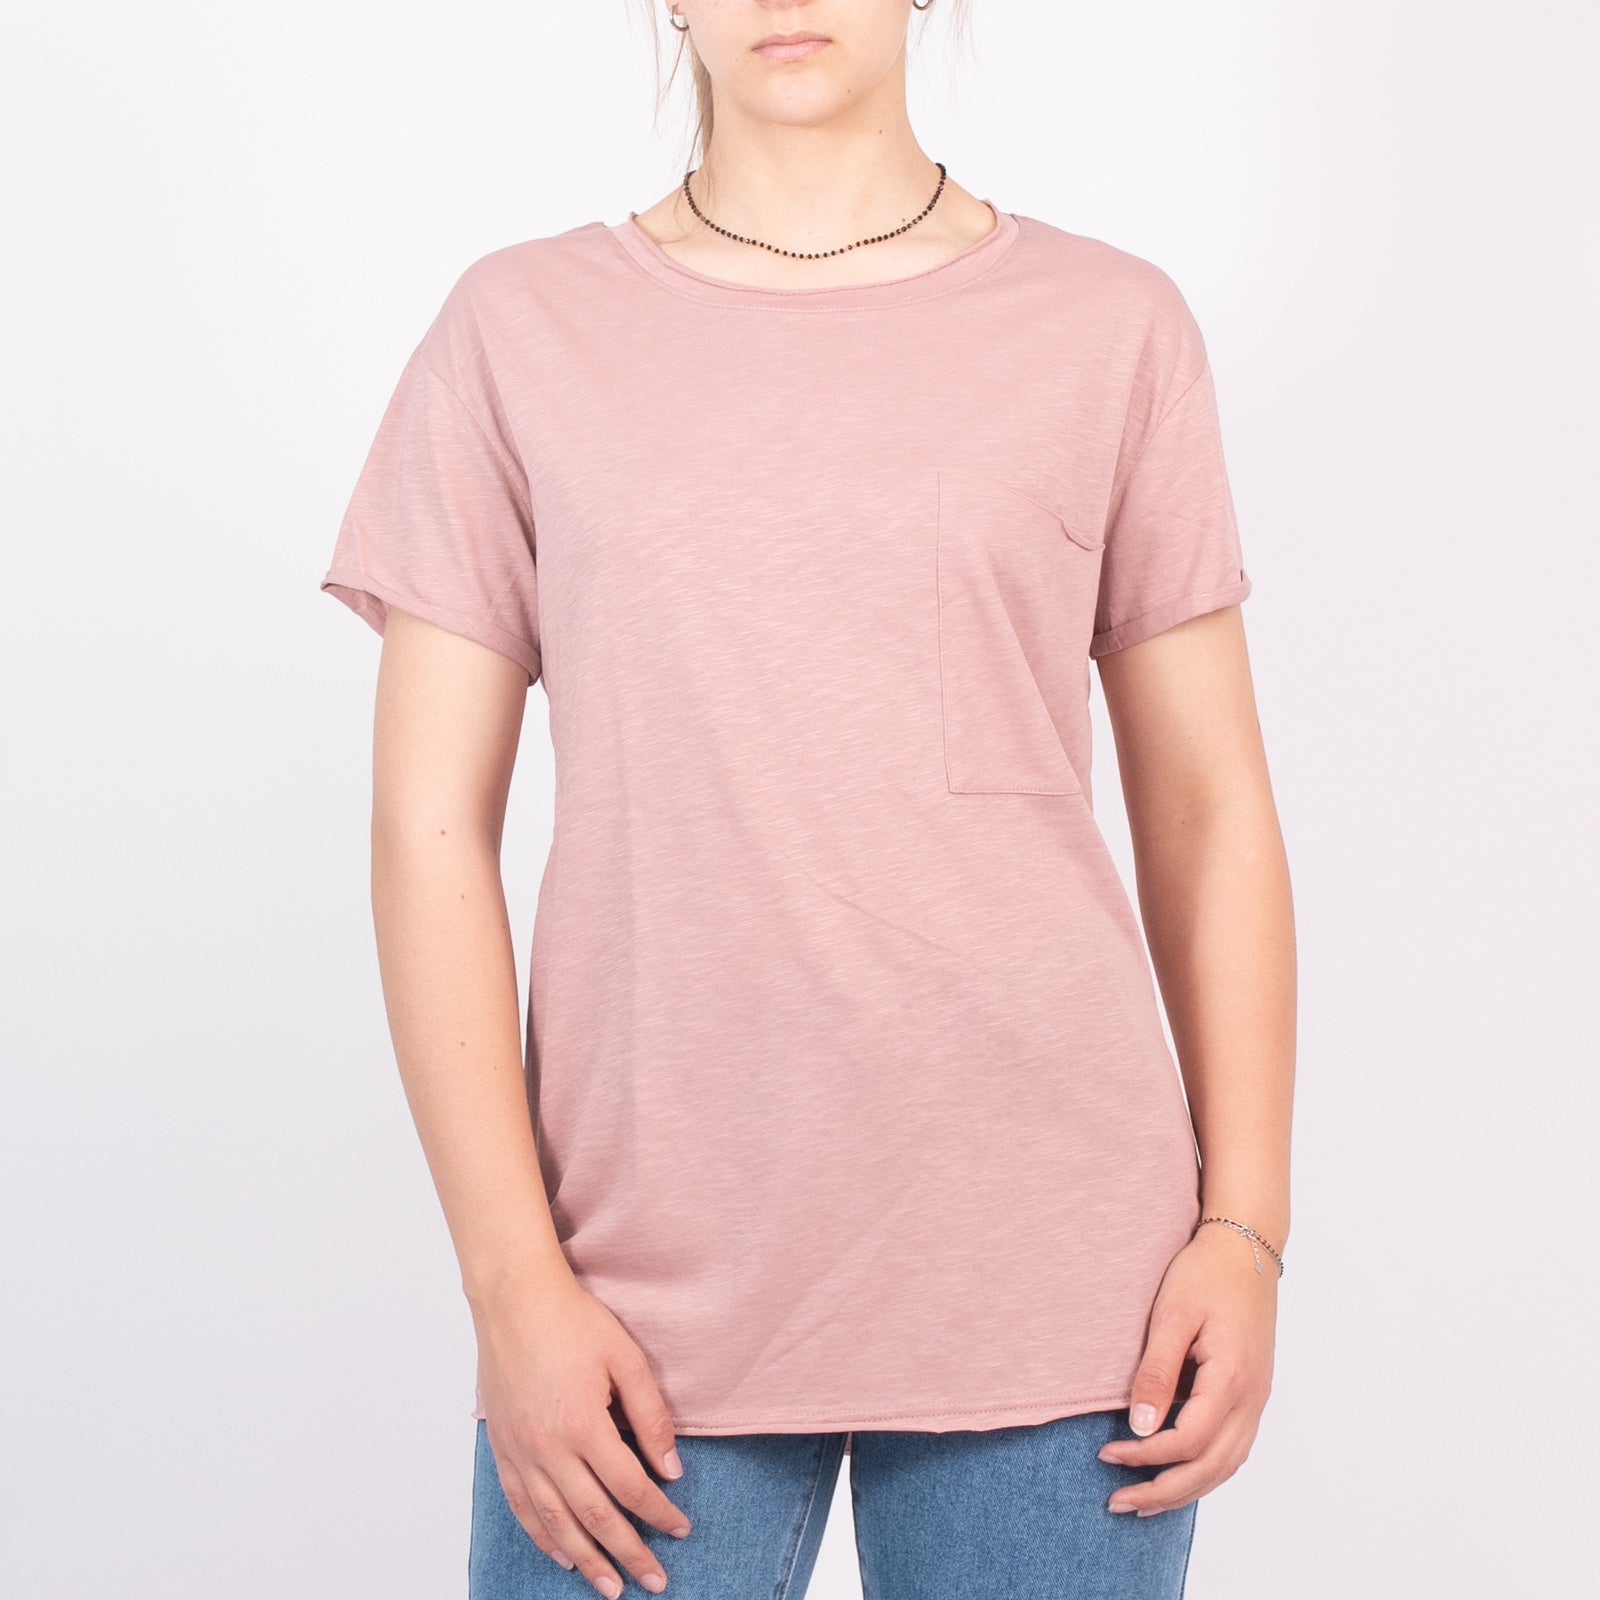 Μπλούζα Με Τσέπη Στο Στήθος Ανοιχτό Ροζ